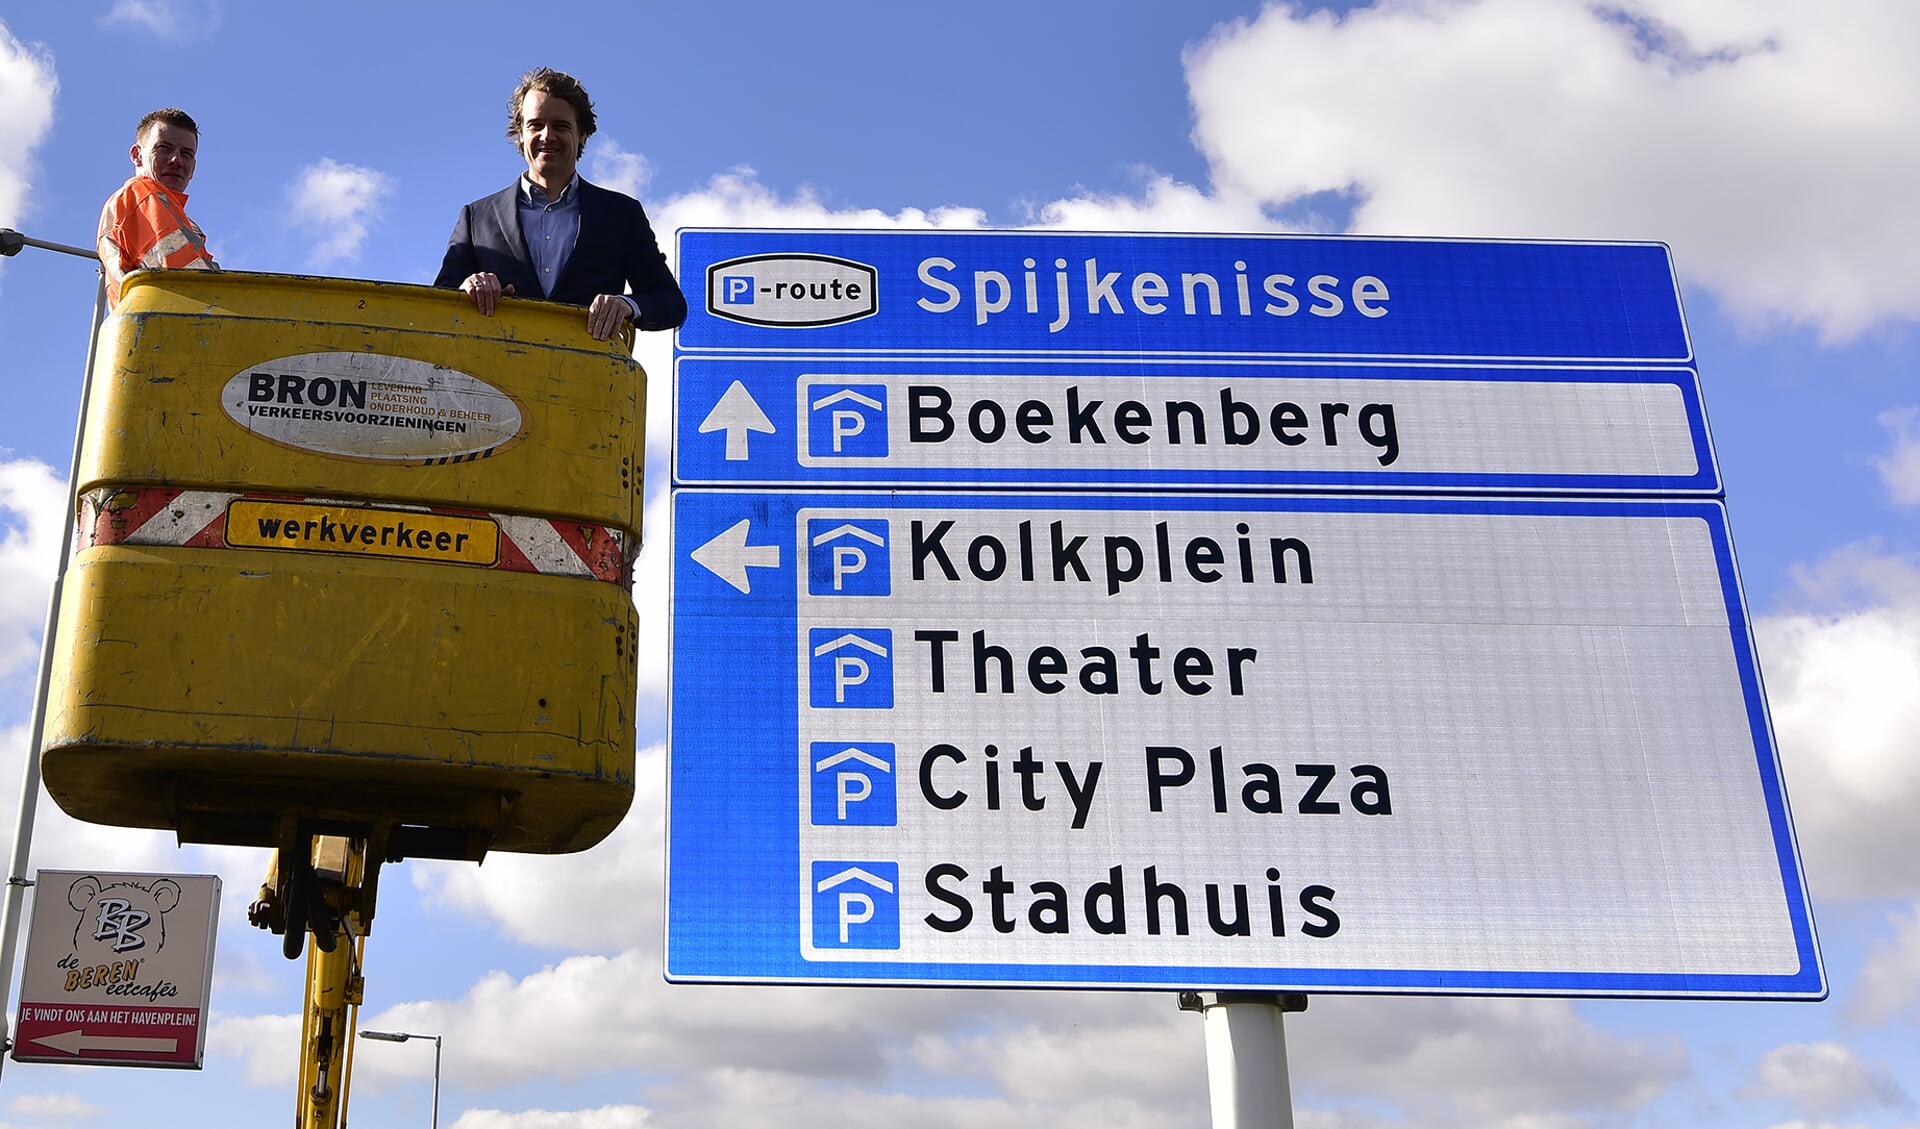 Wethouder Hamerslag presenteert met trots de bewegwijzering naar de parkeergarages. Foto: René Bakker.